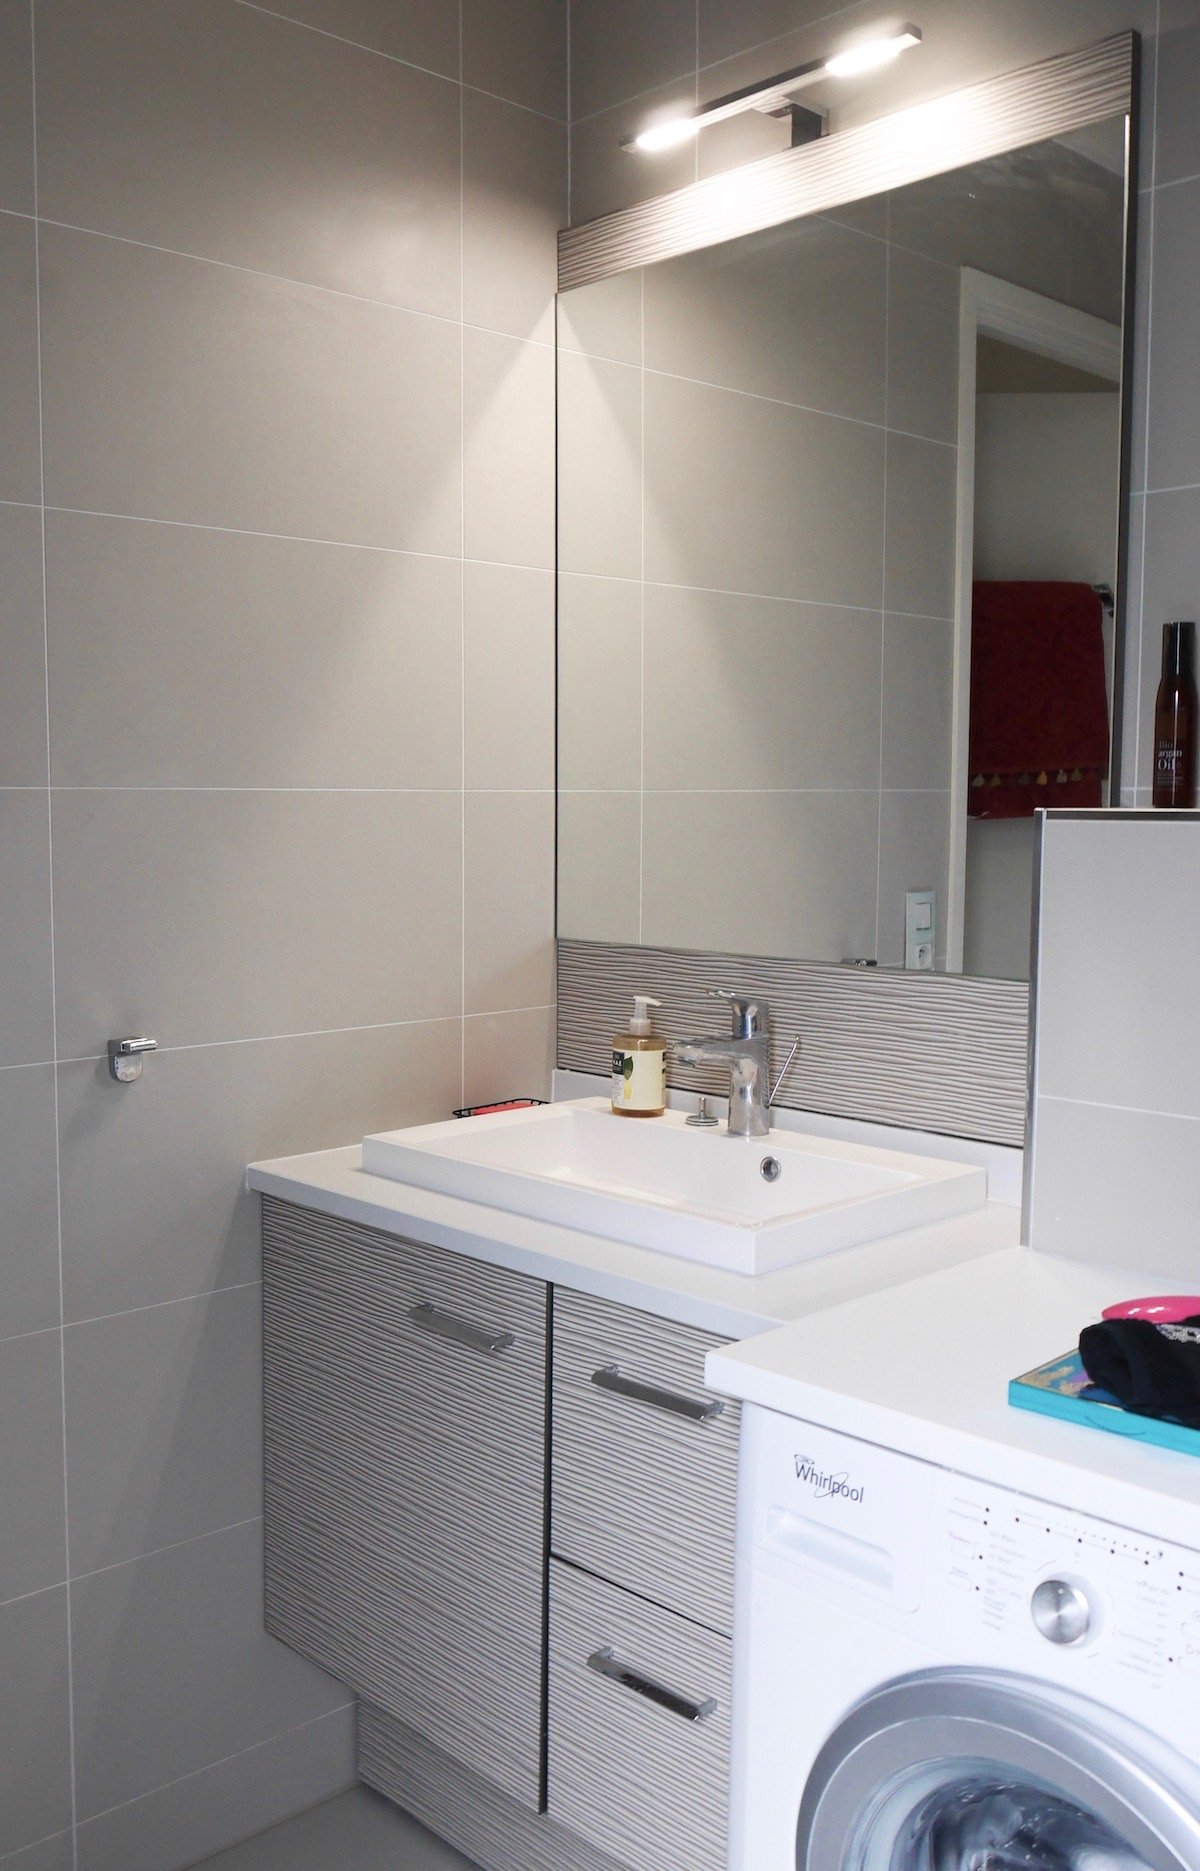 salle de bain grise fonctionnelle cogedim crédence relief vague design